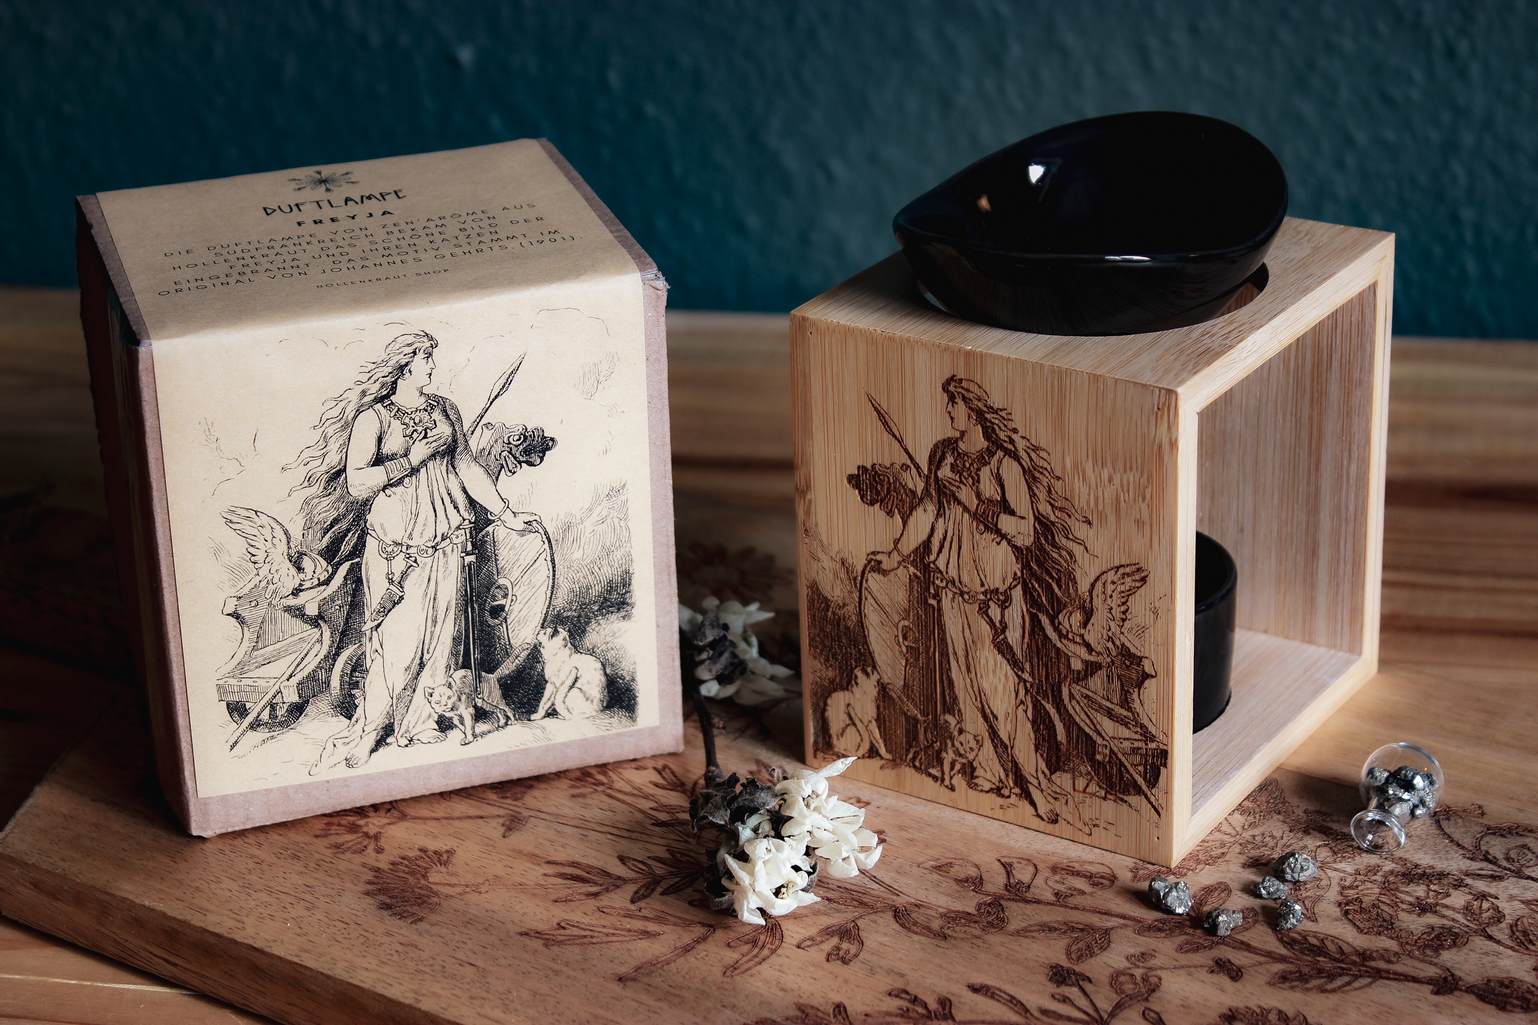 Auf einem Holztisch steht eine Duftlampe mit Holzsockel und schwarzen Keramik-Einsätzen. Auf das Holz ist ein Bild der Göttin Freya mit ihrem Katzen eingebrannt. Daneben steht ein Produktkarton der das gleiche Bildnis aufgedruckt hat.